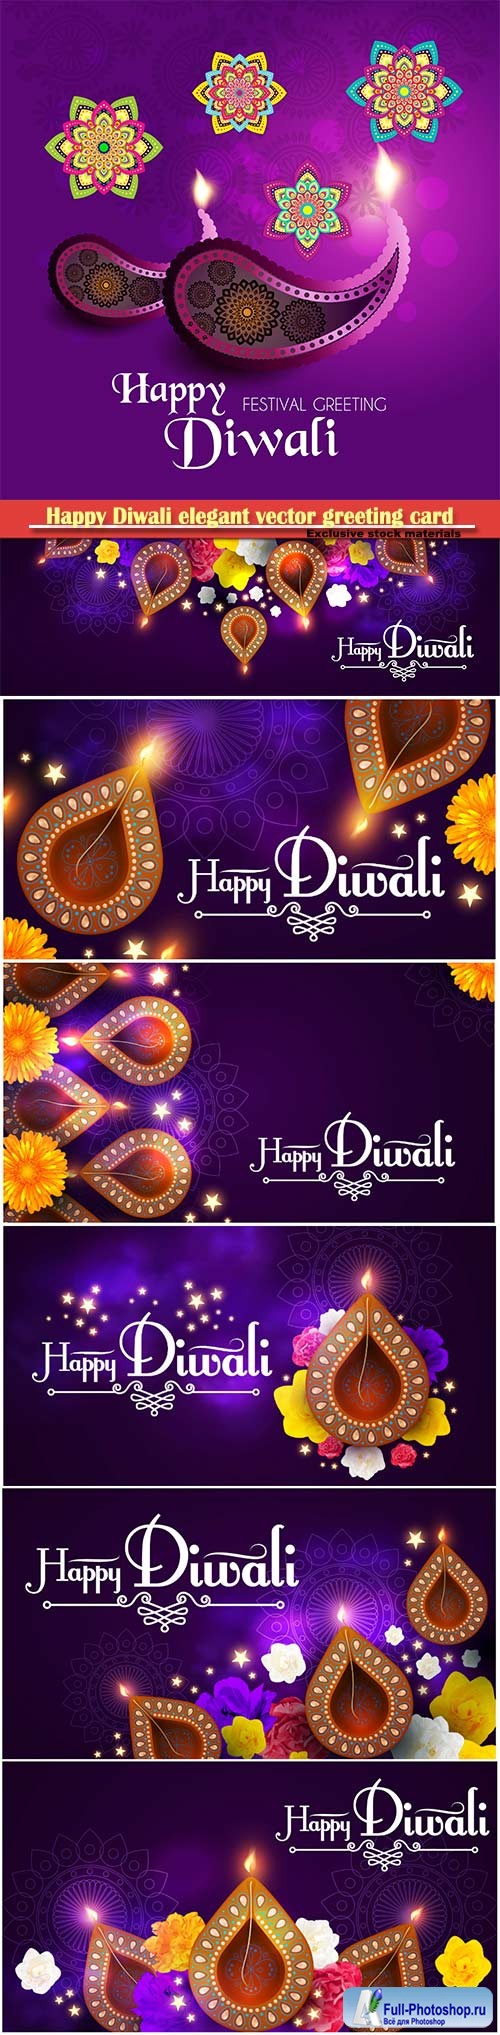 Happy Diwali elegant vector greeting card design